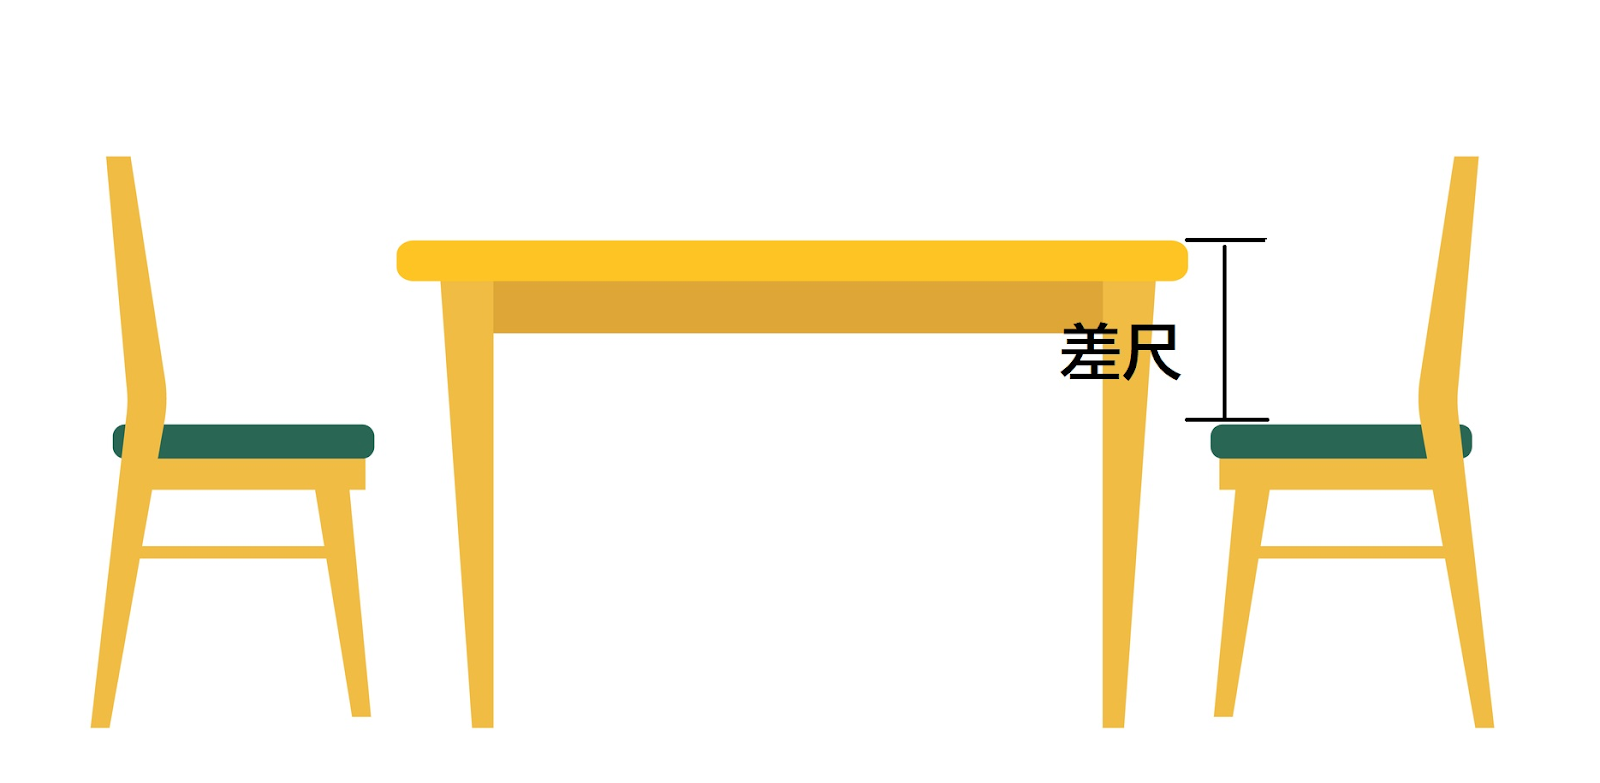 テーブルと椅子のバランスは「差尺」が基準